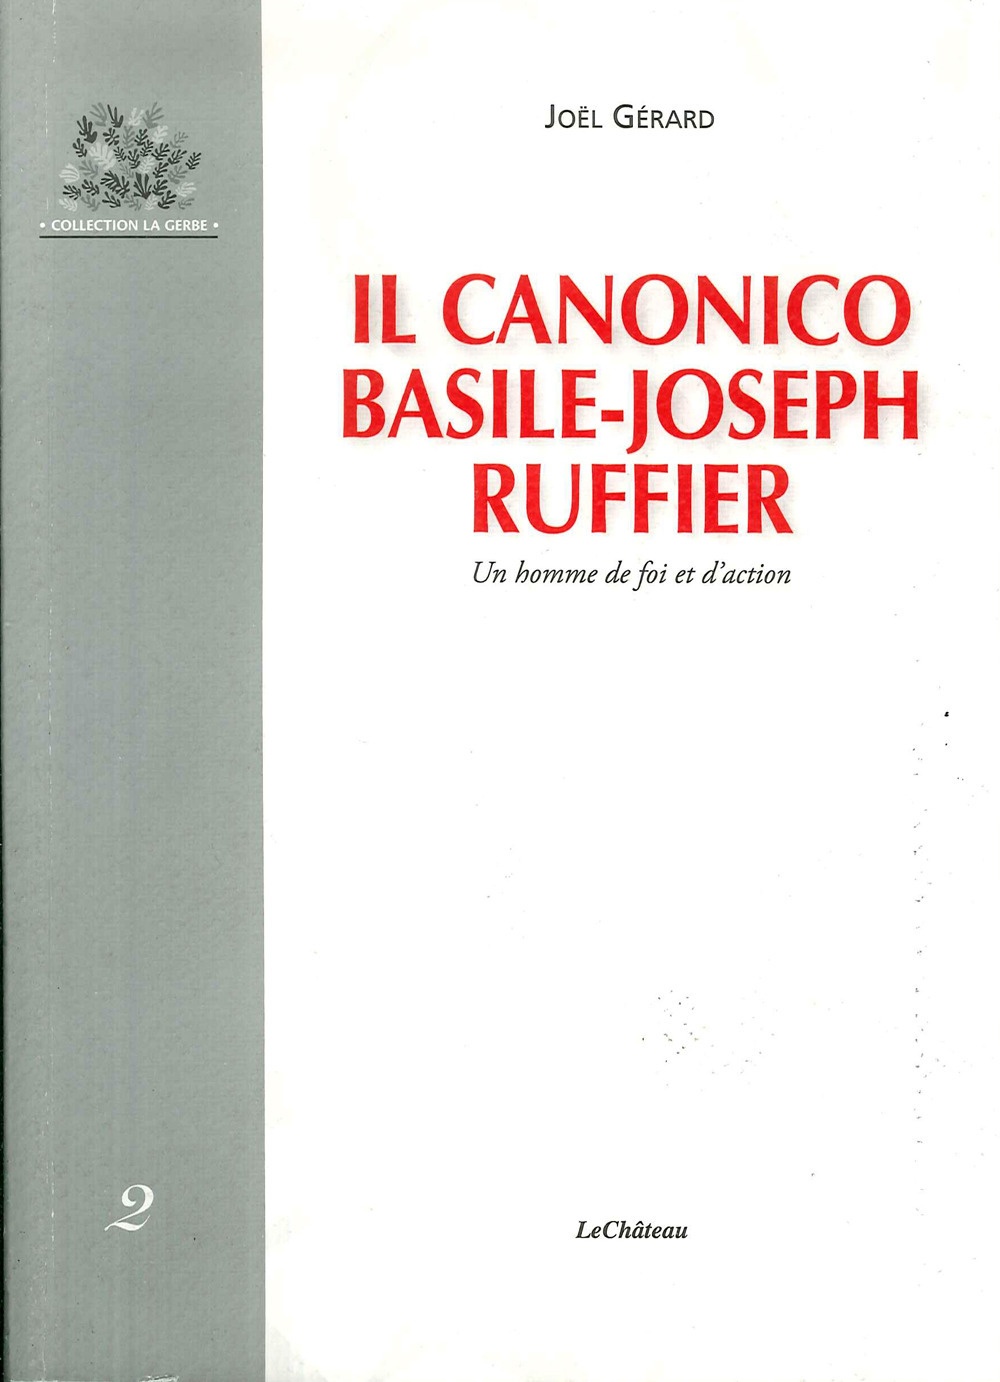 Il Canonico Basile-Joseph Ruffier. Un homme de foi et d'action - [Le Chateau]